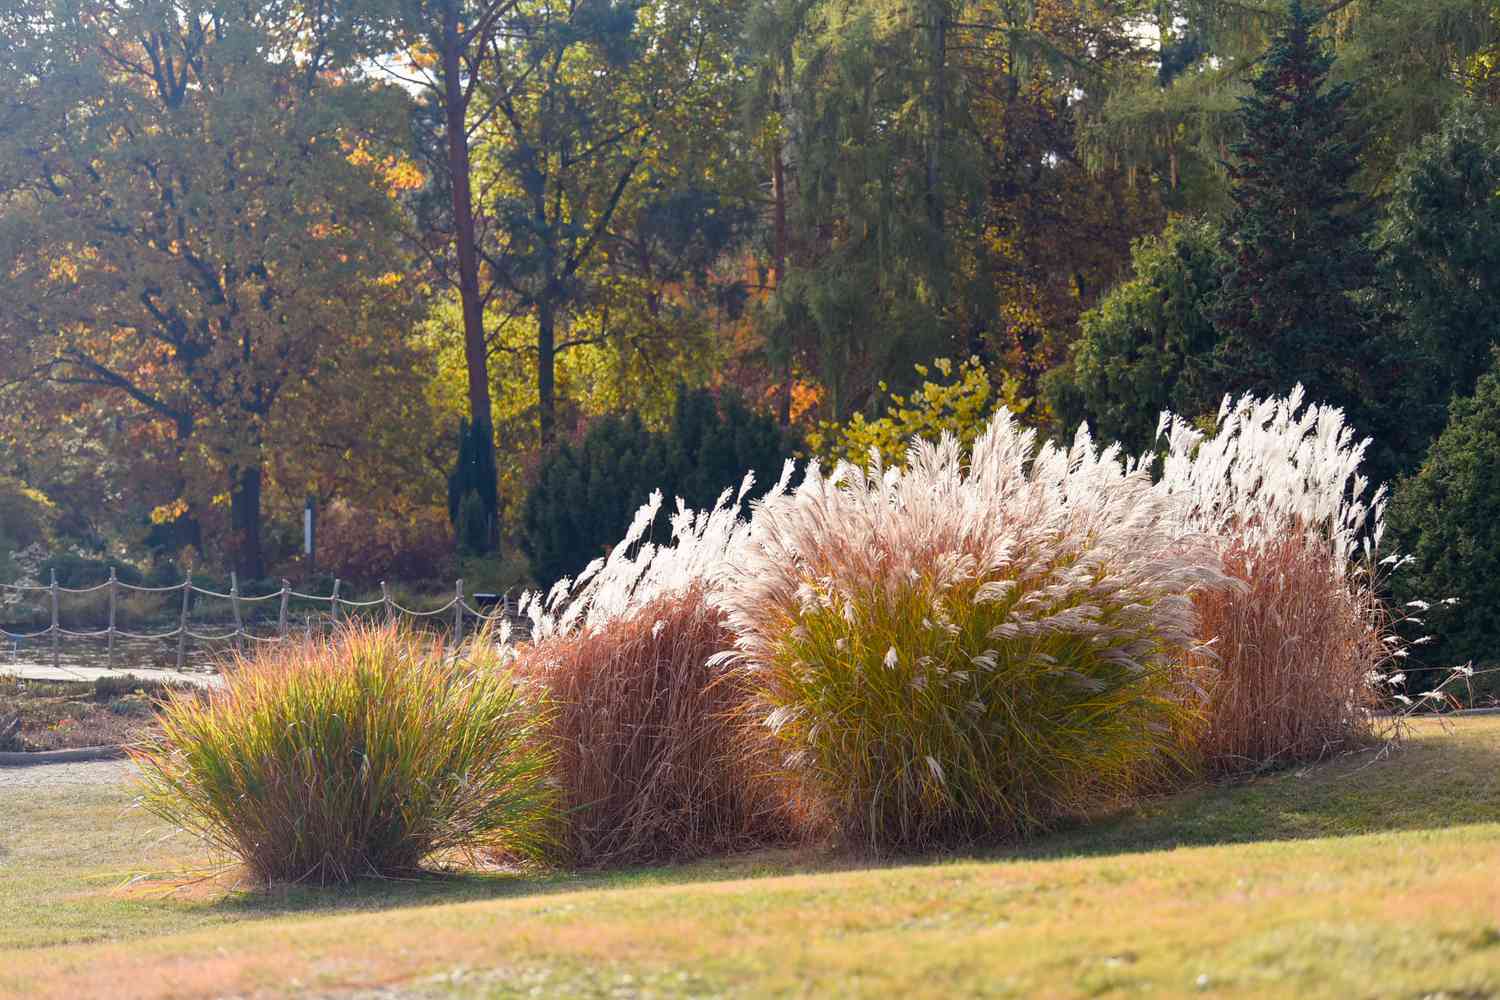 Silbergräser in der Mitte des Rasens mit weißen, gefiederten Federn